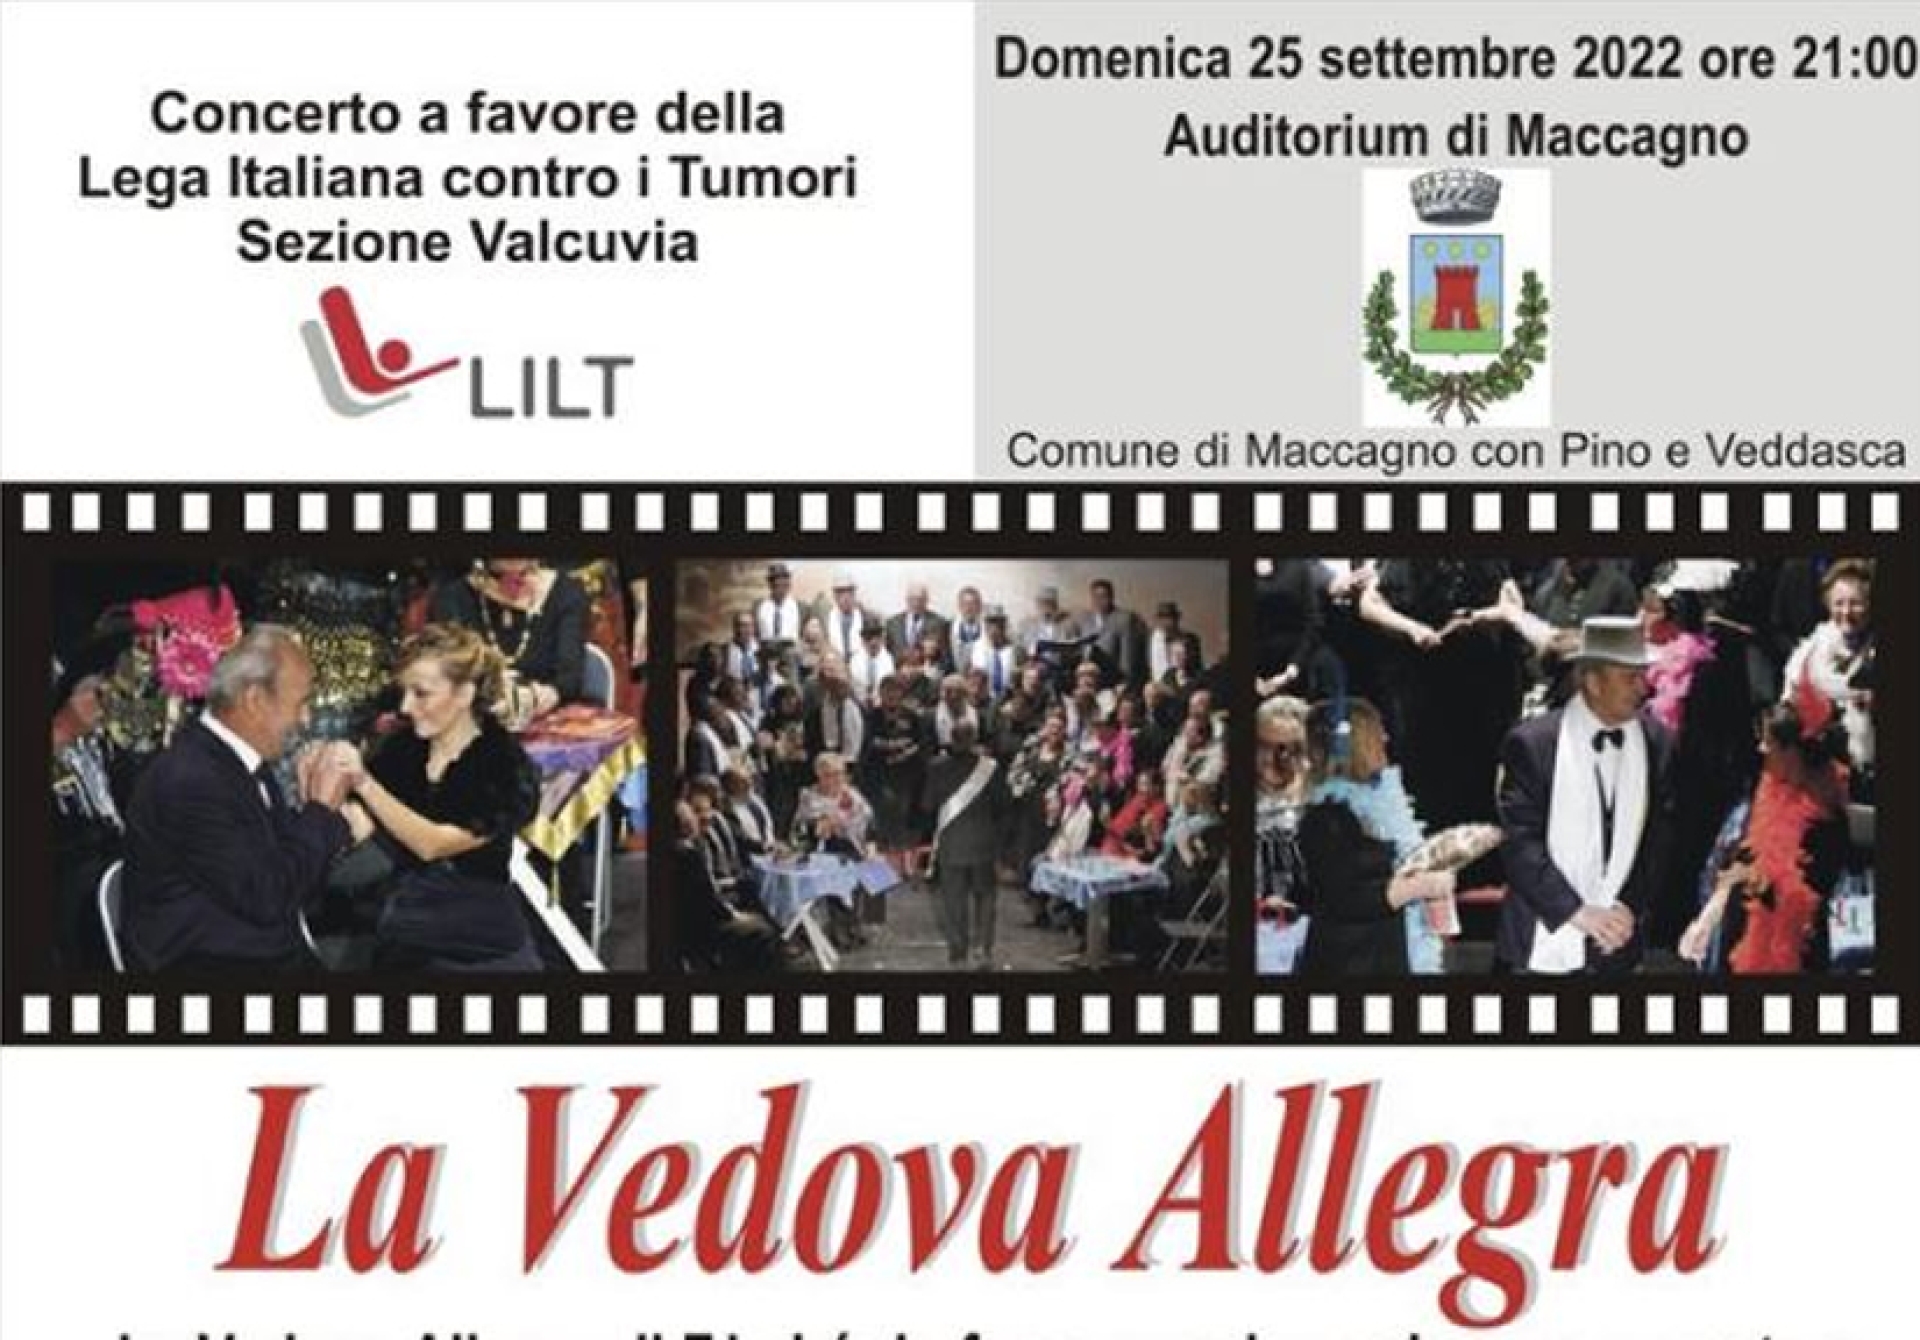 La vedova allegra - Concerto a favore della Lega Italiana contro i Tumori